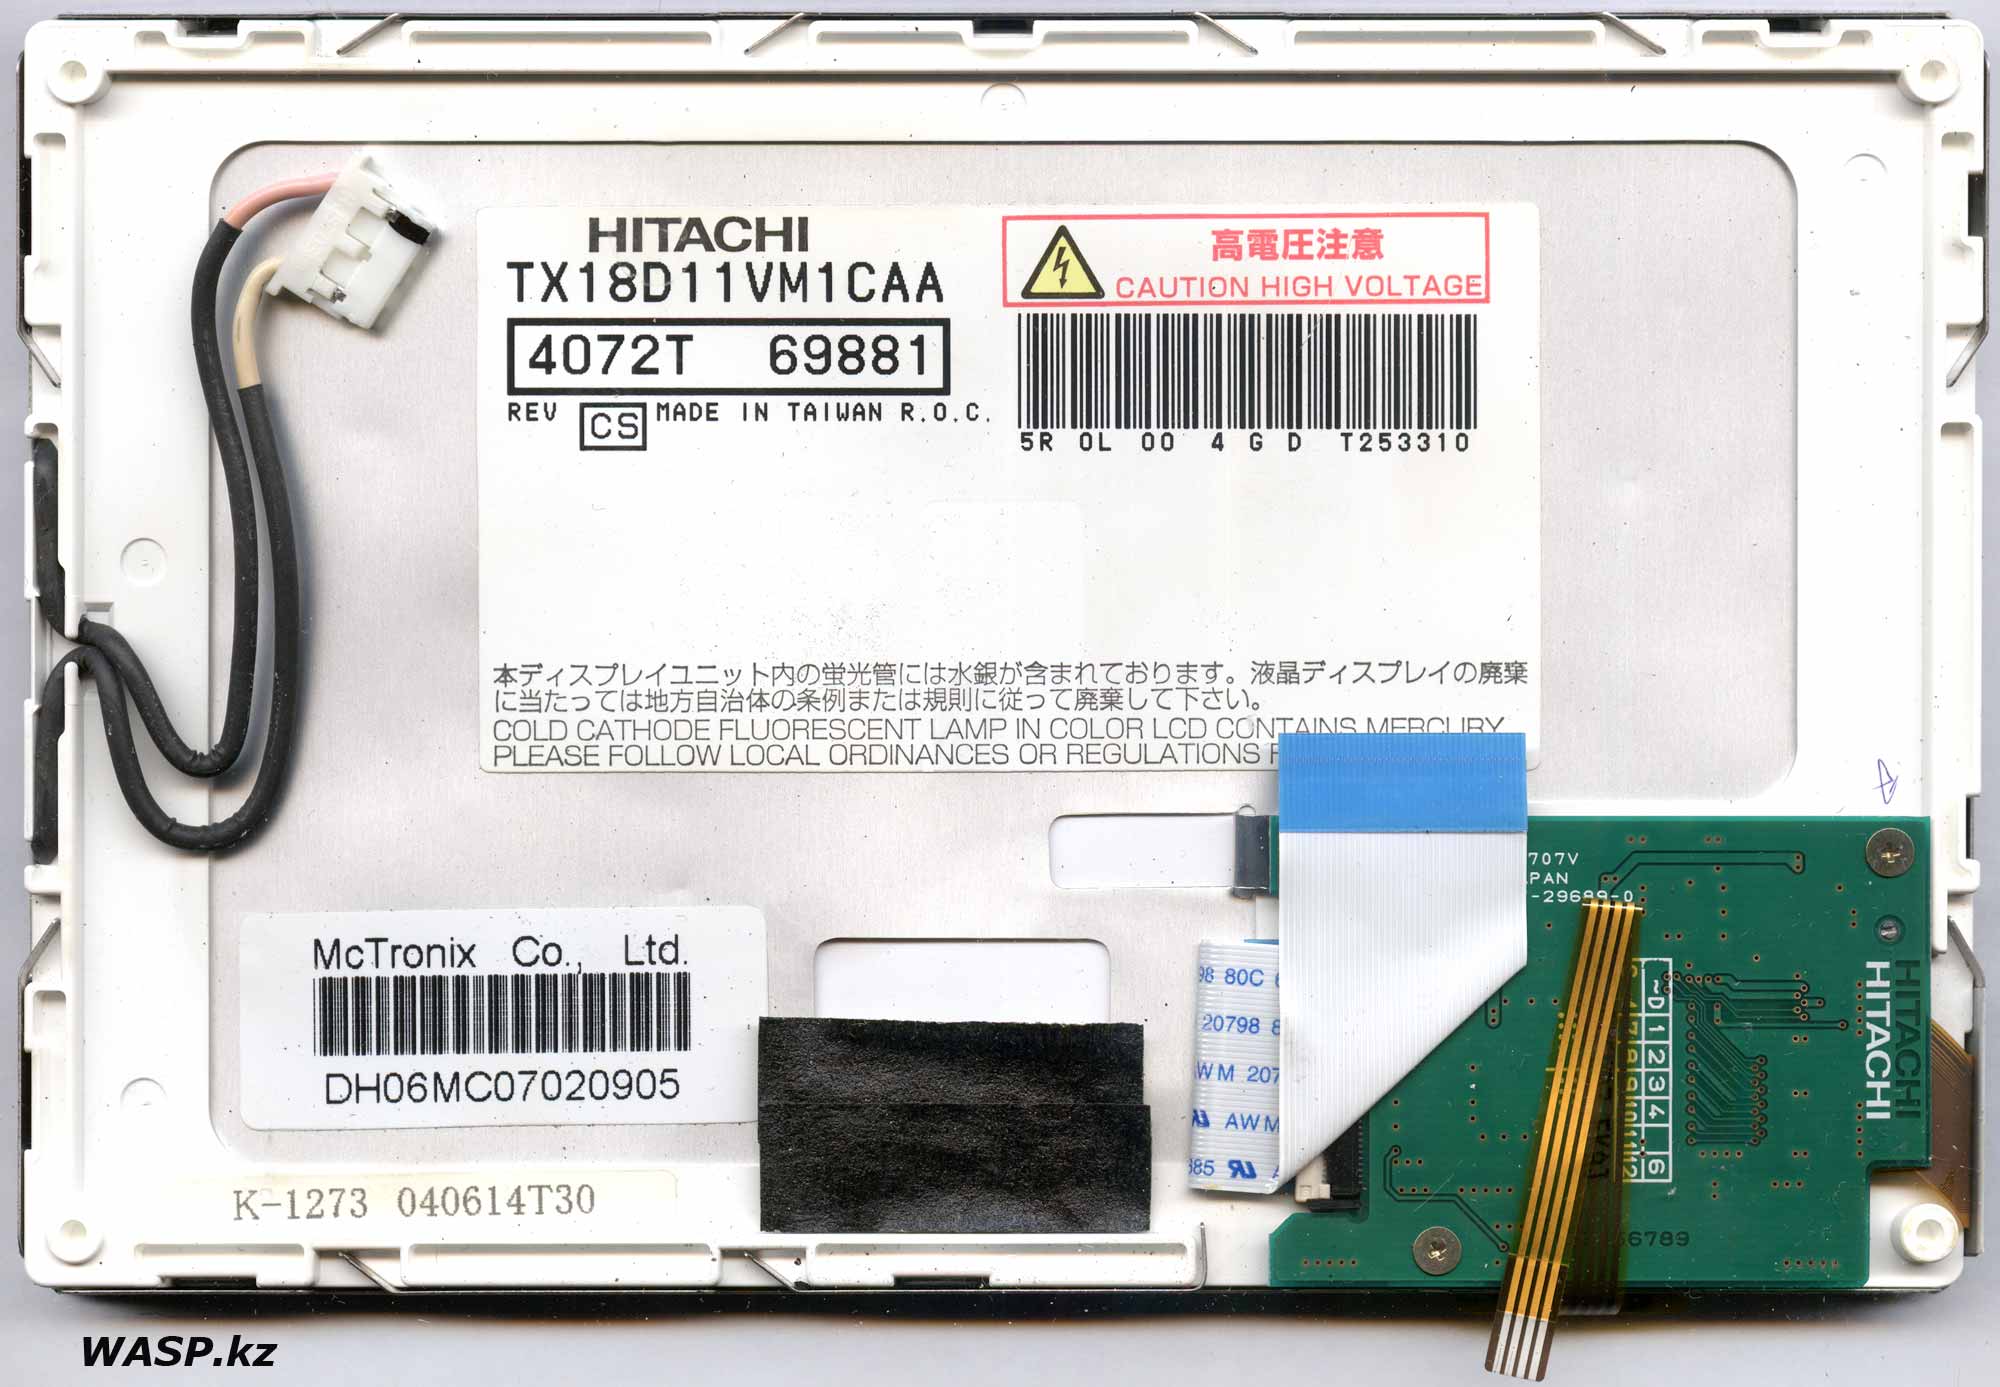 HITACHI TX18D11VM1CAA ЖК панель, полное описание и разборка